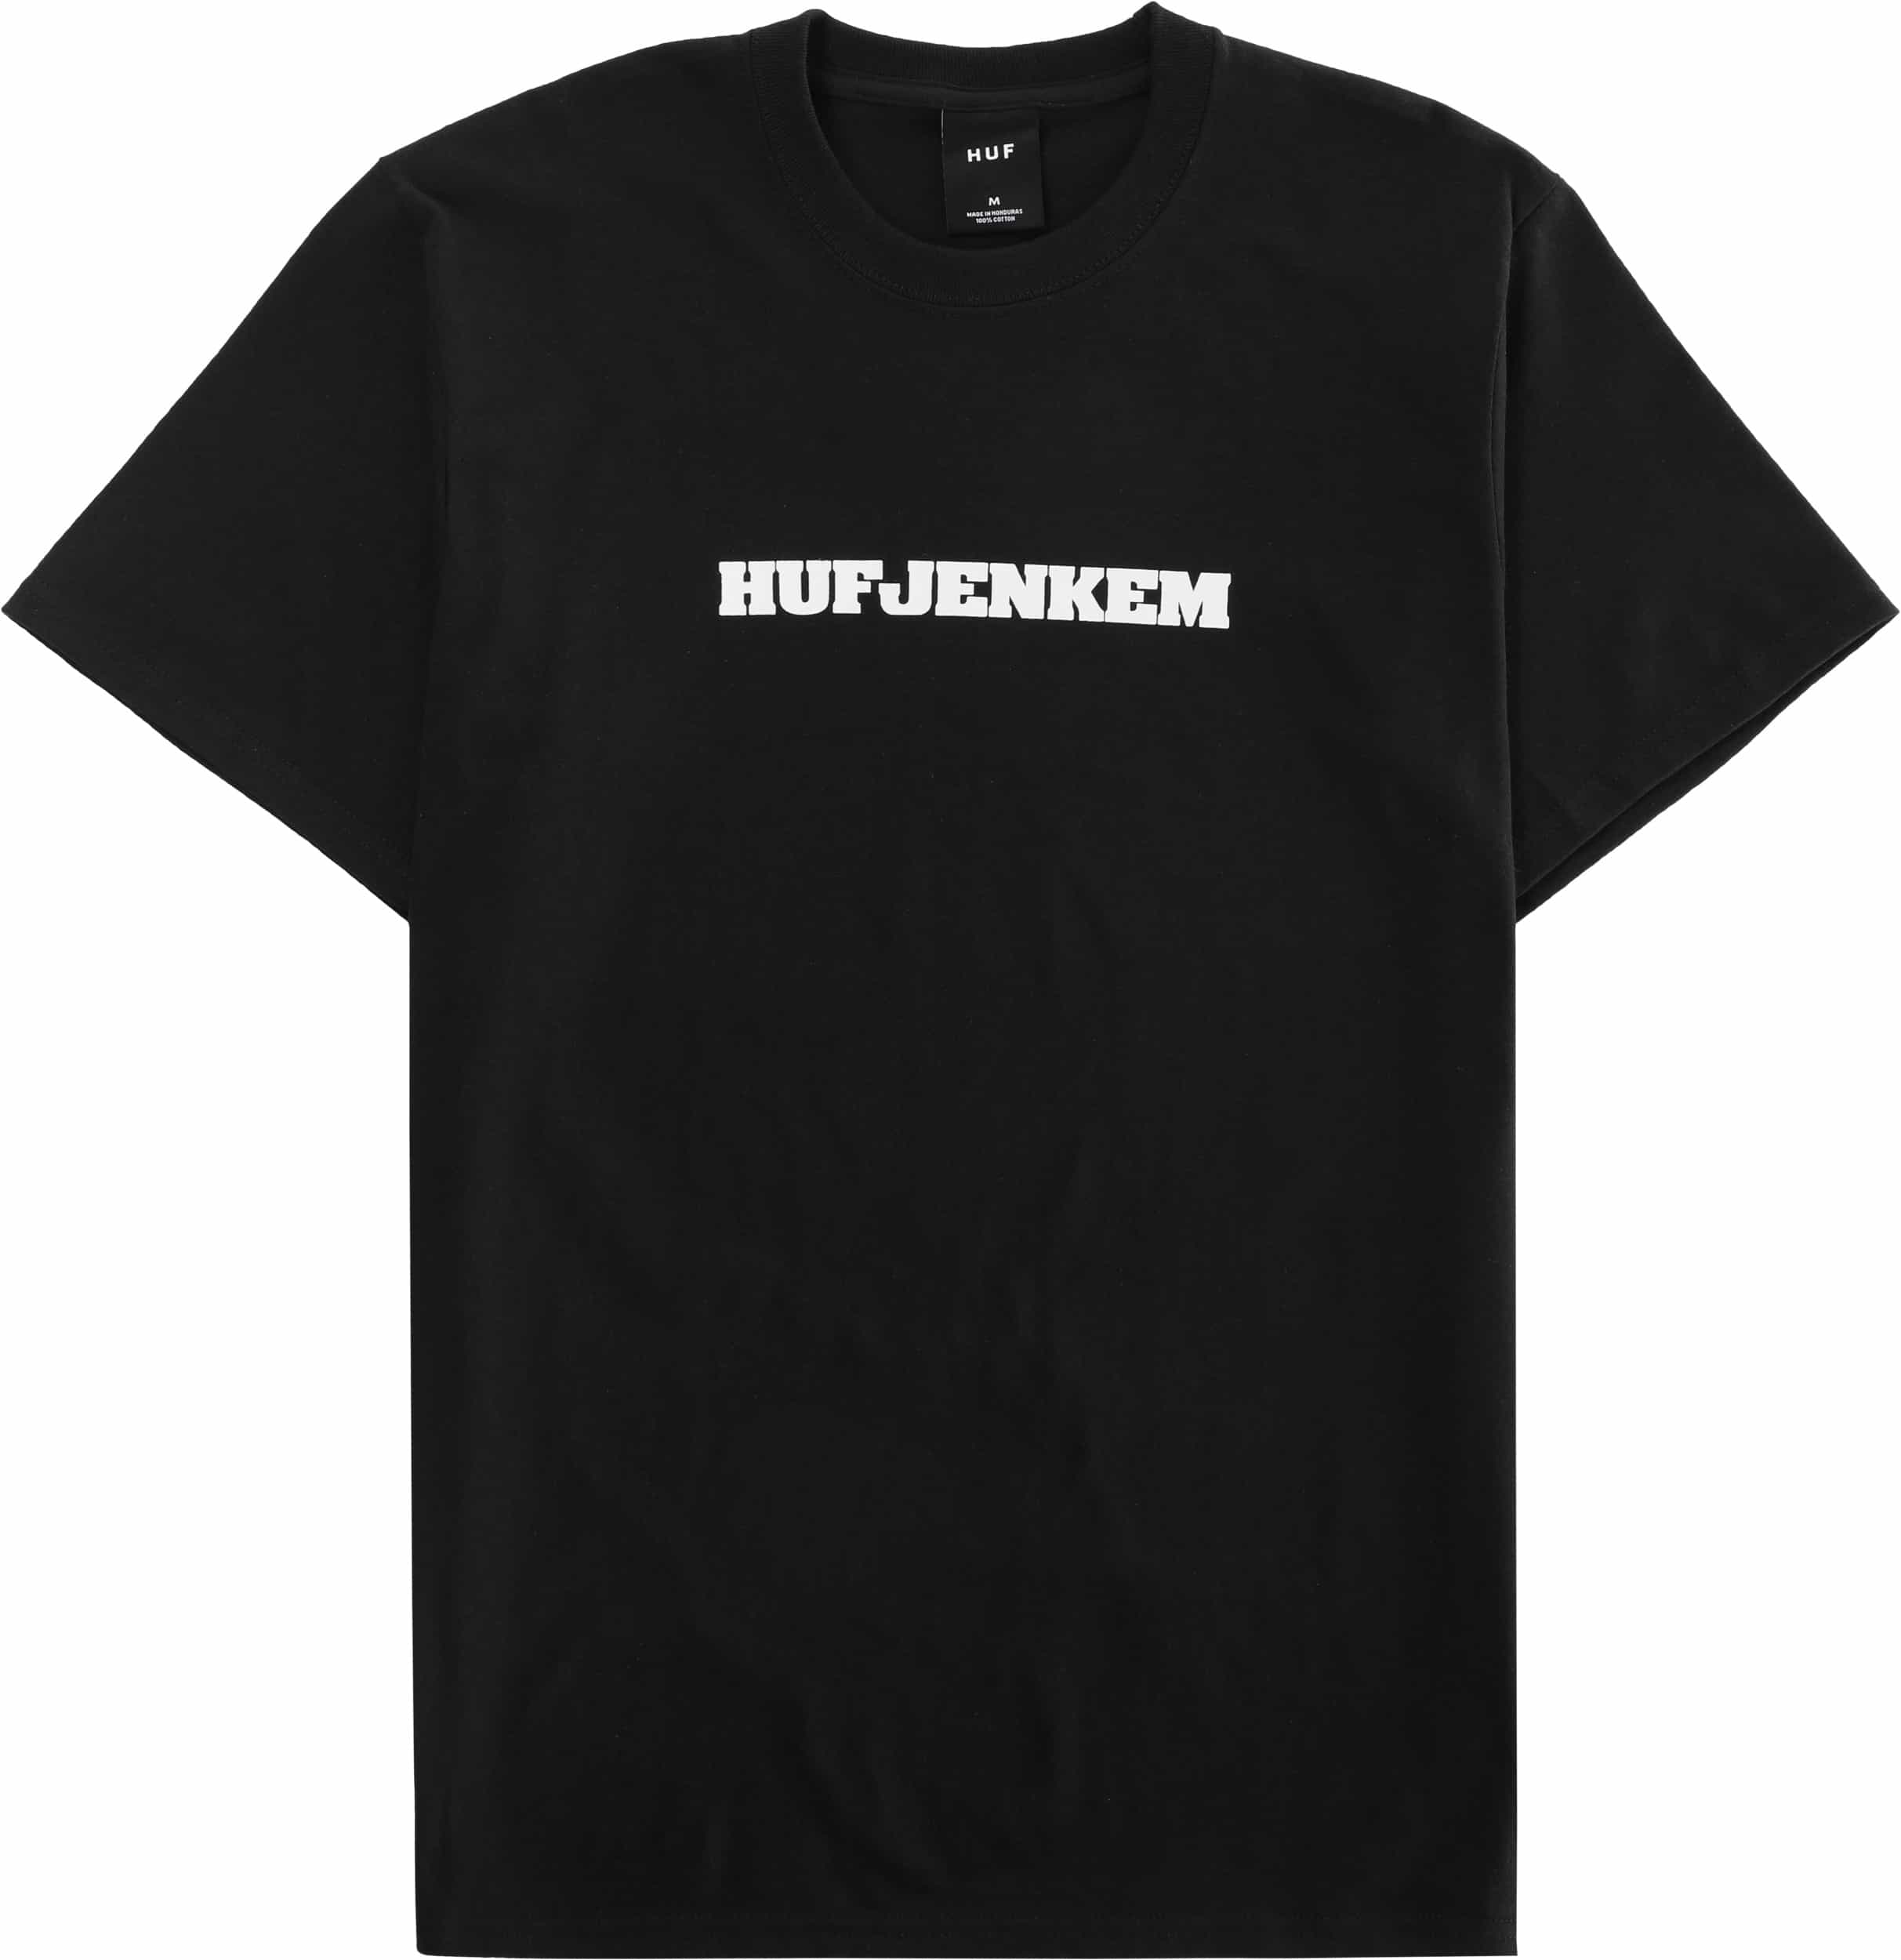 HUF Jenkem Classic T-Shirt - black | Tactics